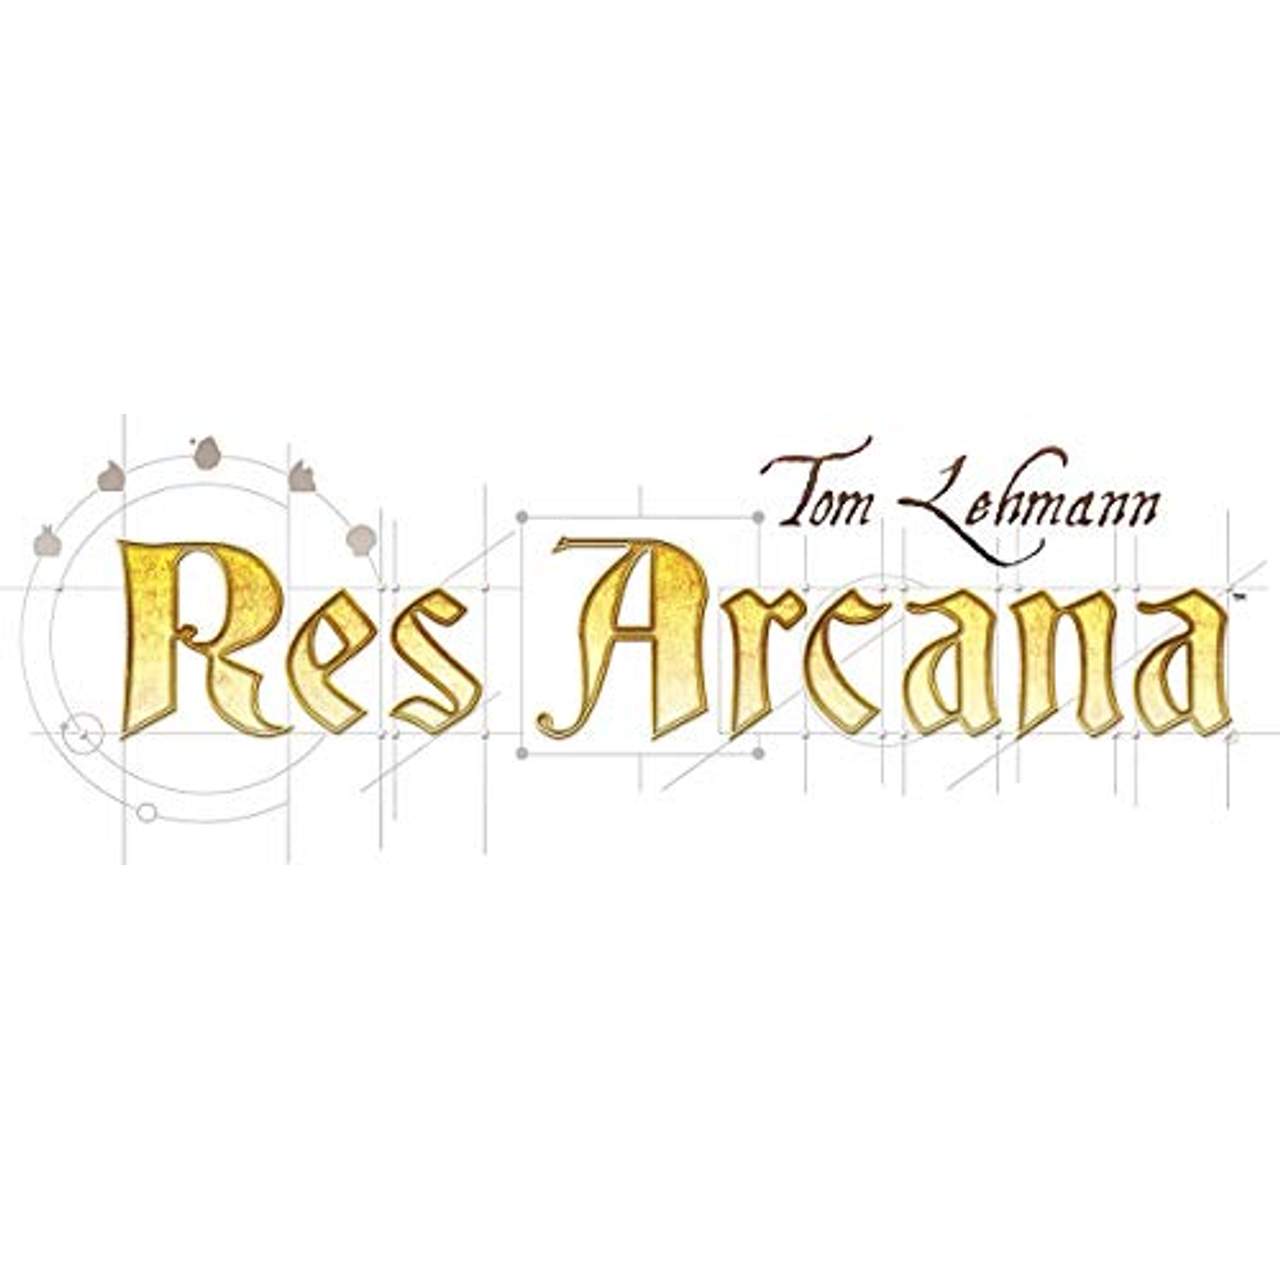 Res Arcana von Tom Lehmann (Sand Castle Games)